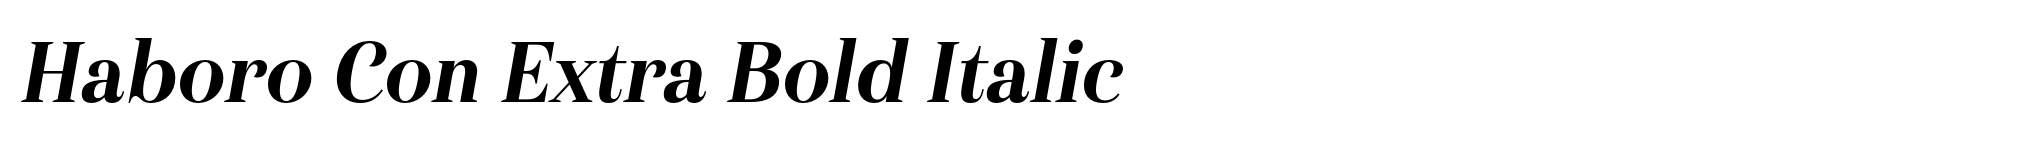 Haboro Con Extra Bold Italic image